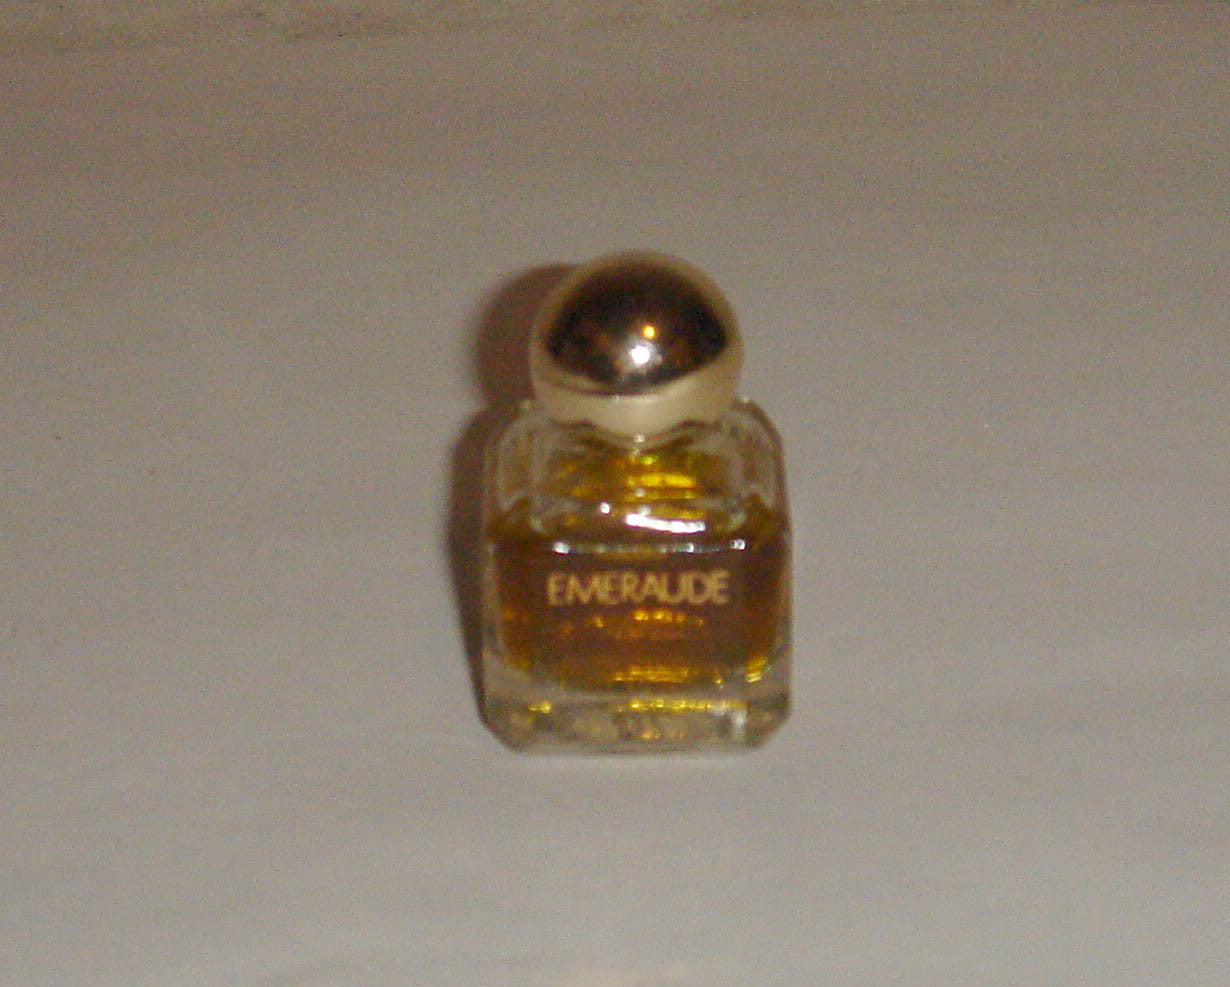 Coty Emeraude Perfume Mini